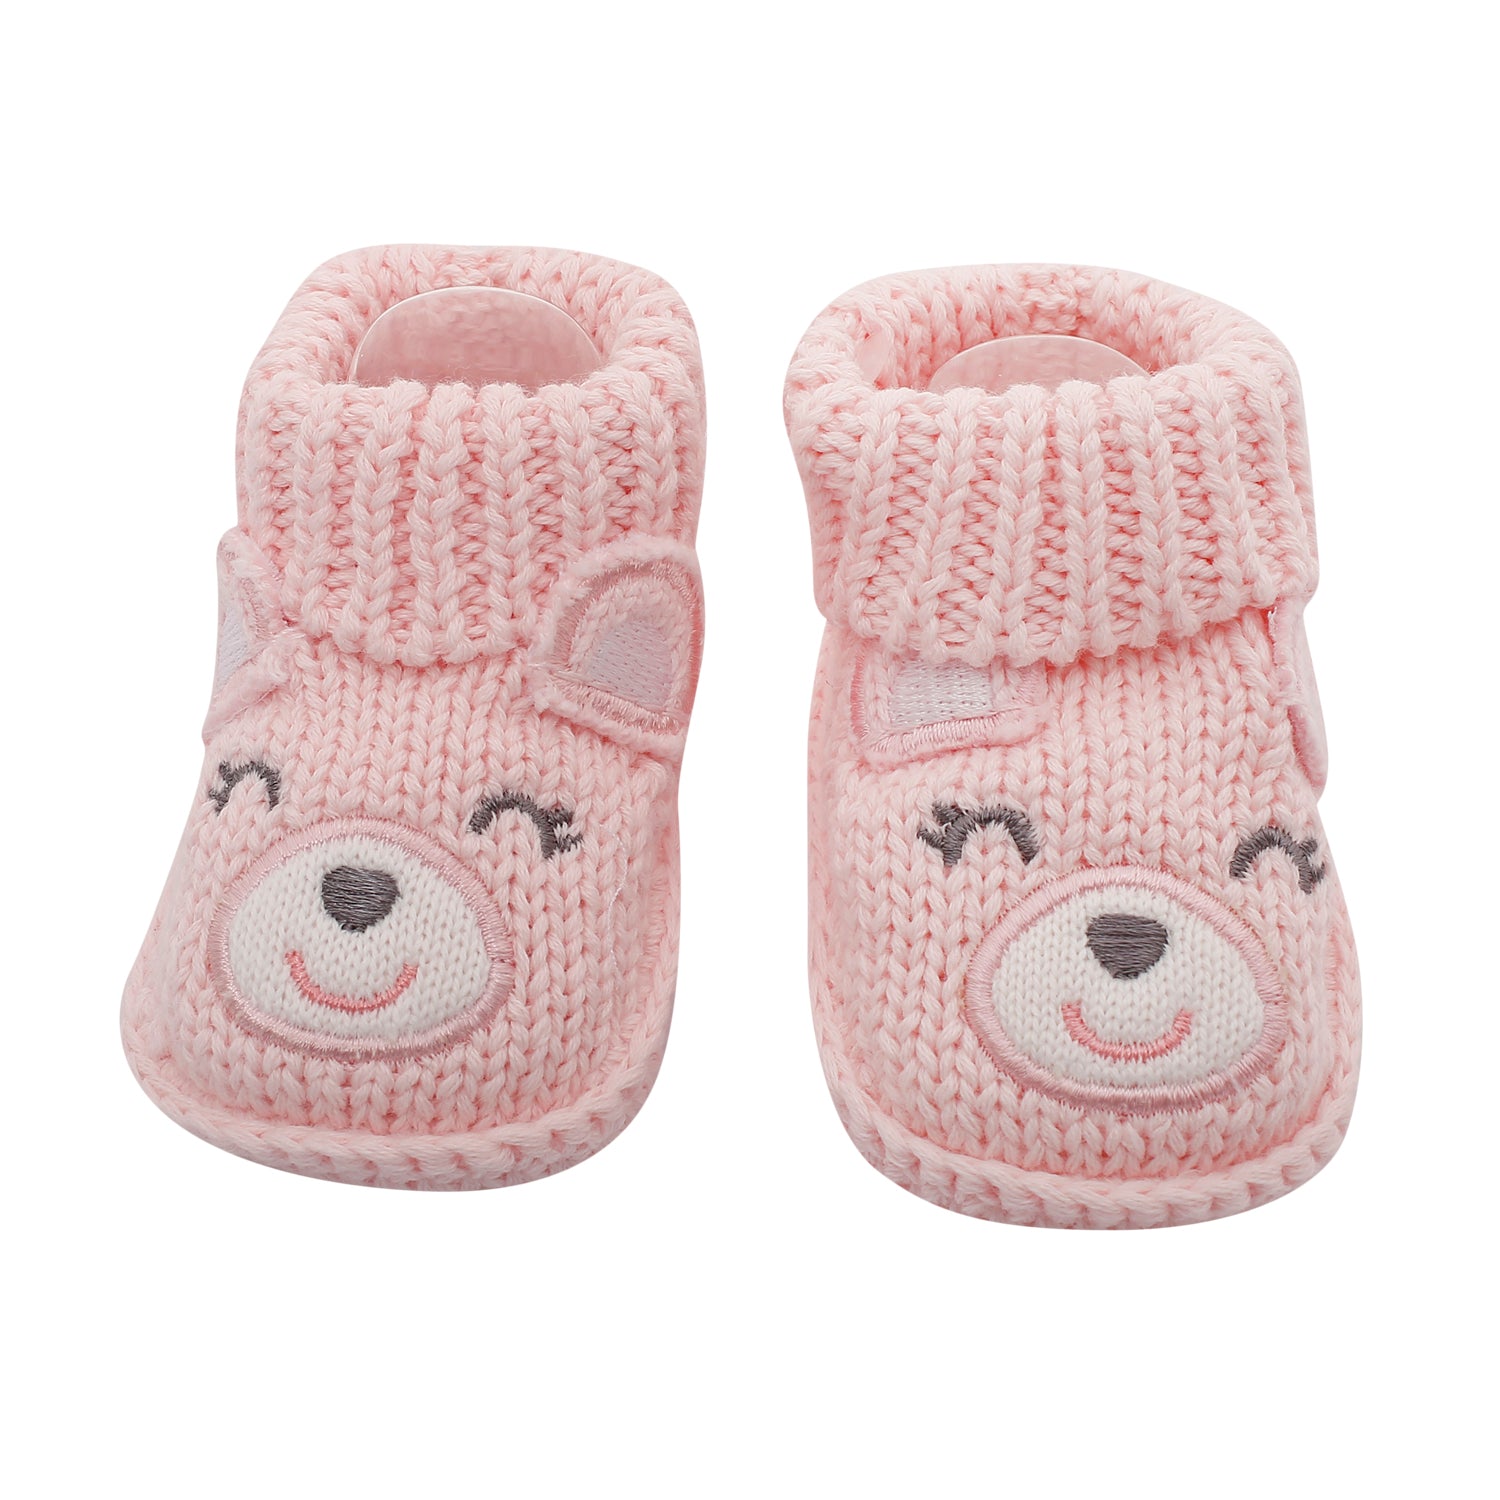 Sweetheart Light Pink Socks Booties - Baby Moo